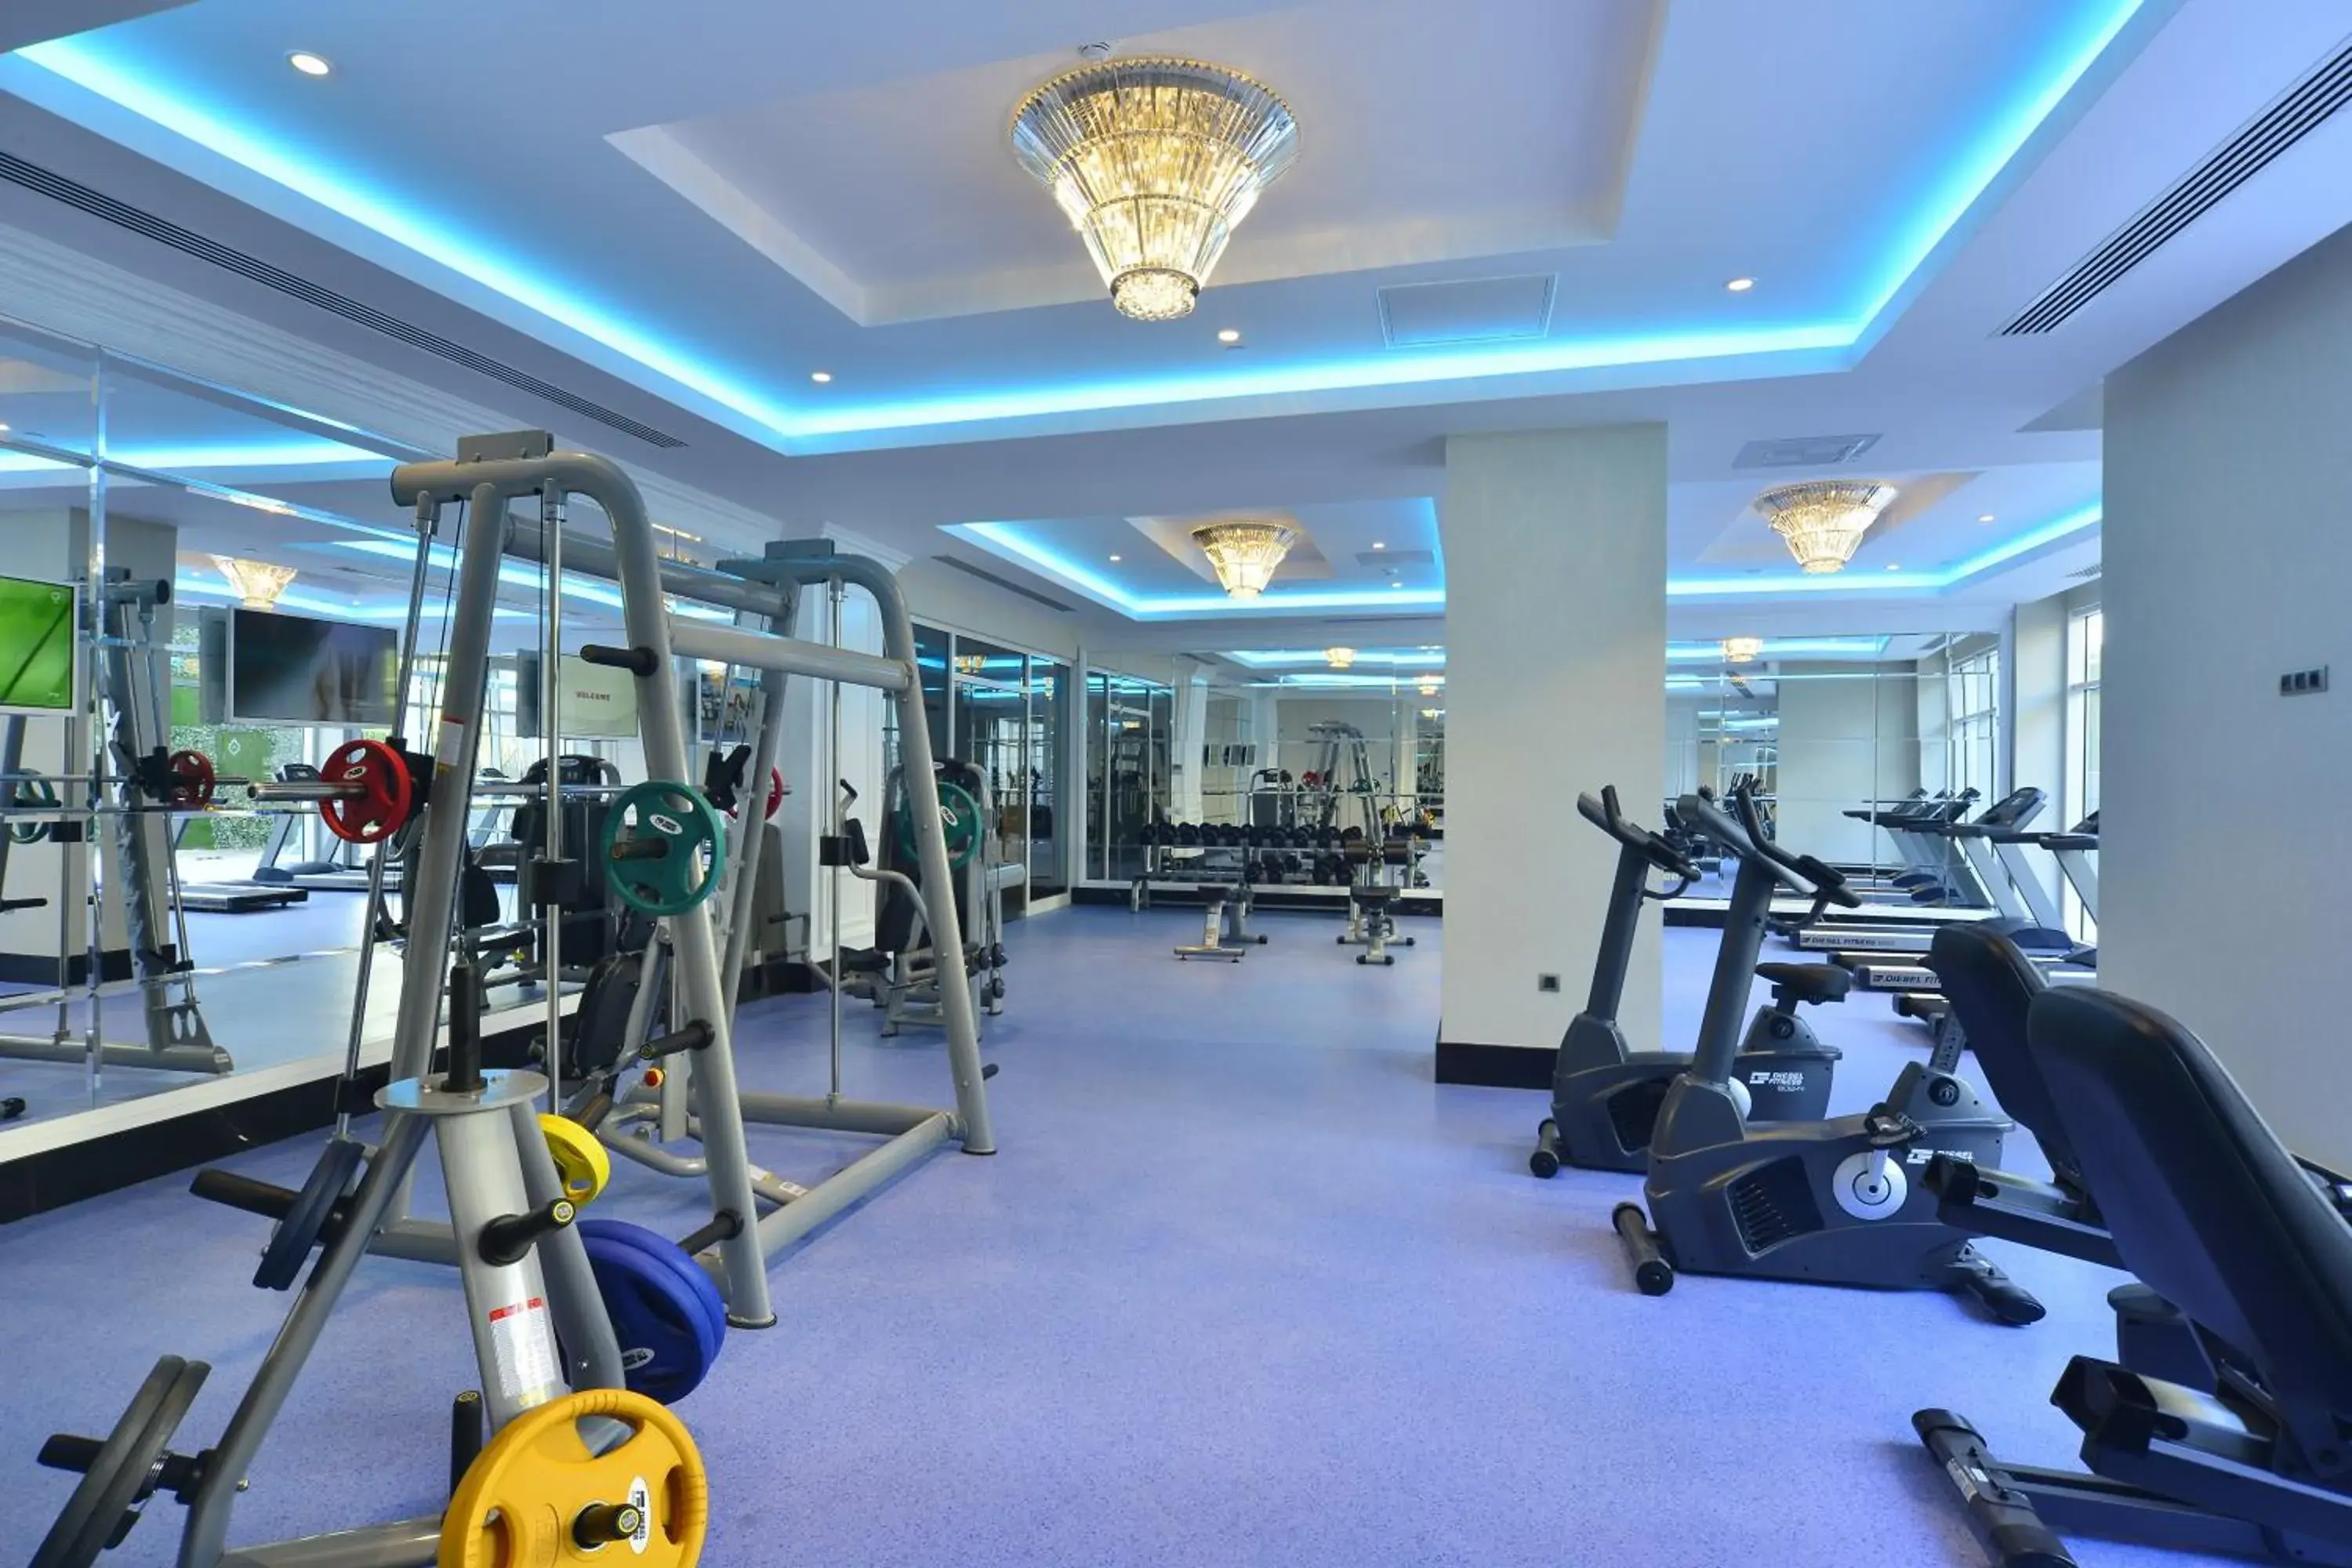 Fitness centre/facilities, Fitness Center/Facilities in Azura Deluxe Resort & Spa - Ultra All Inclusive